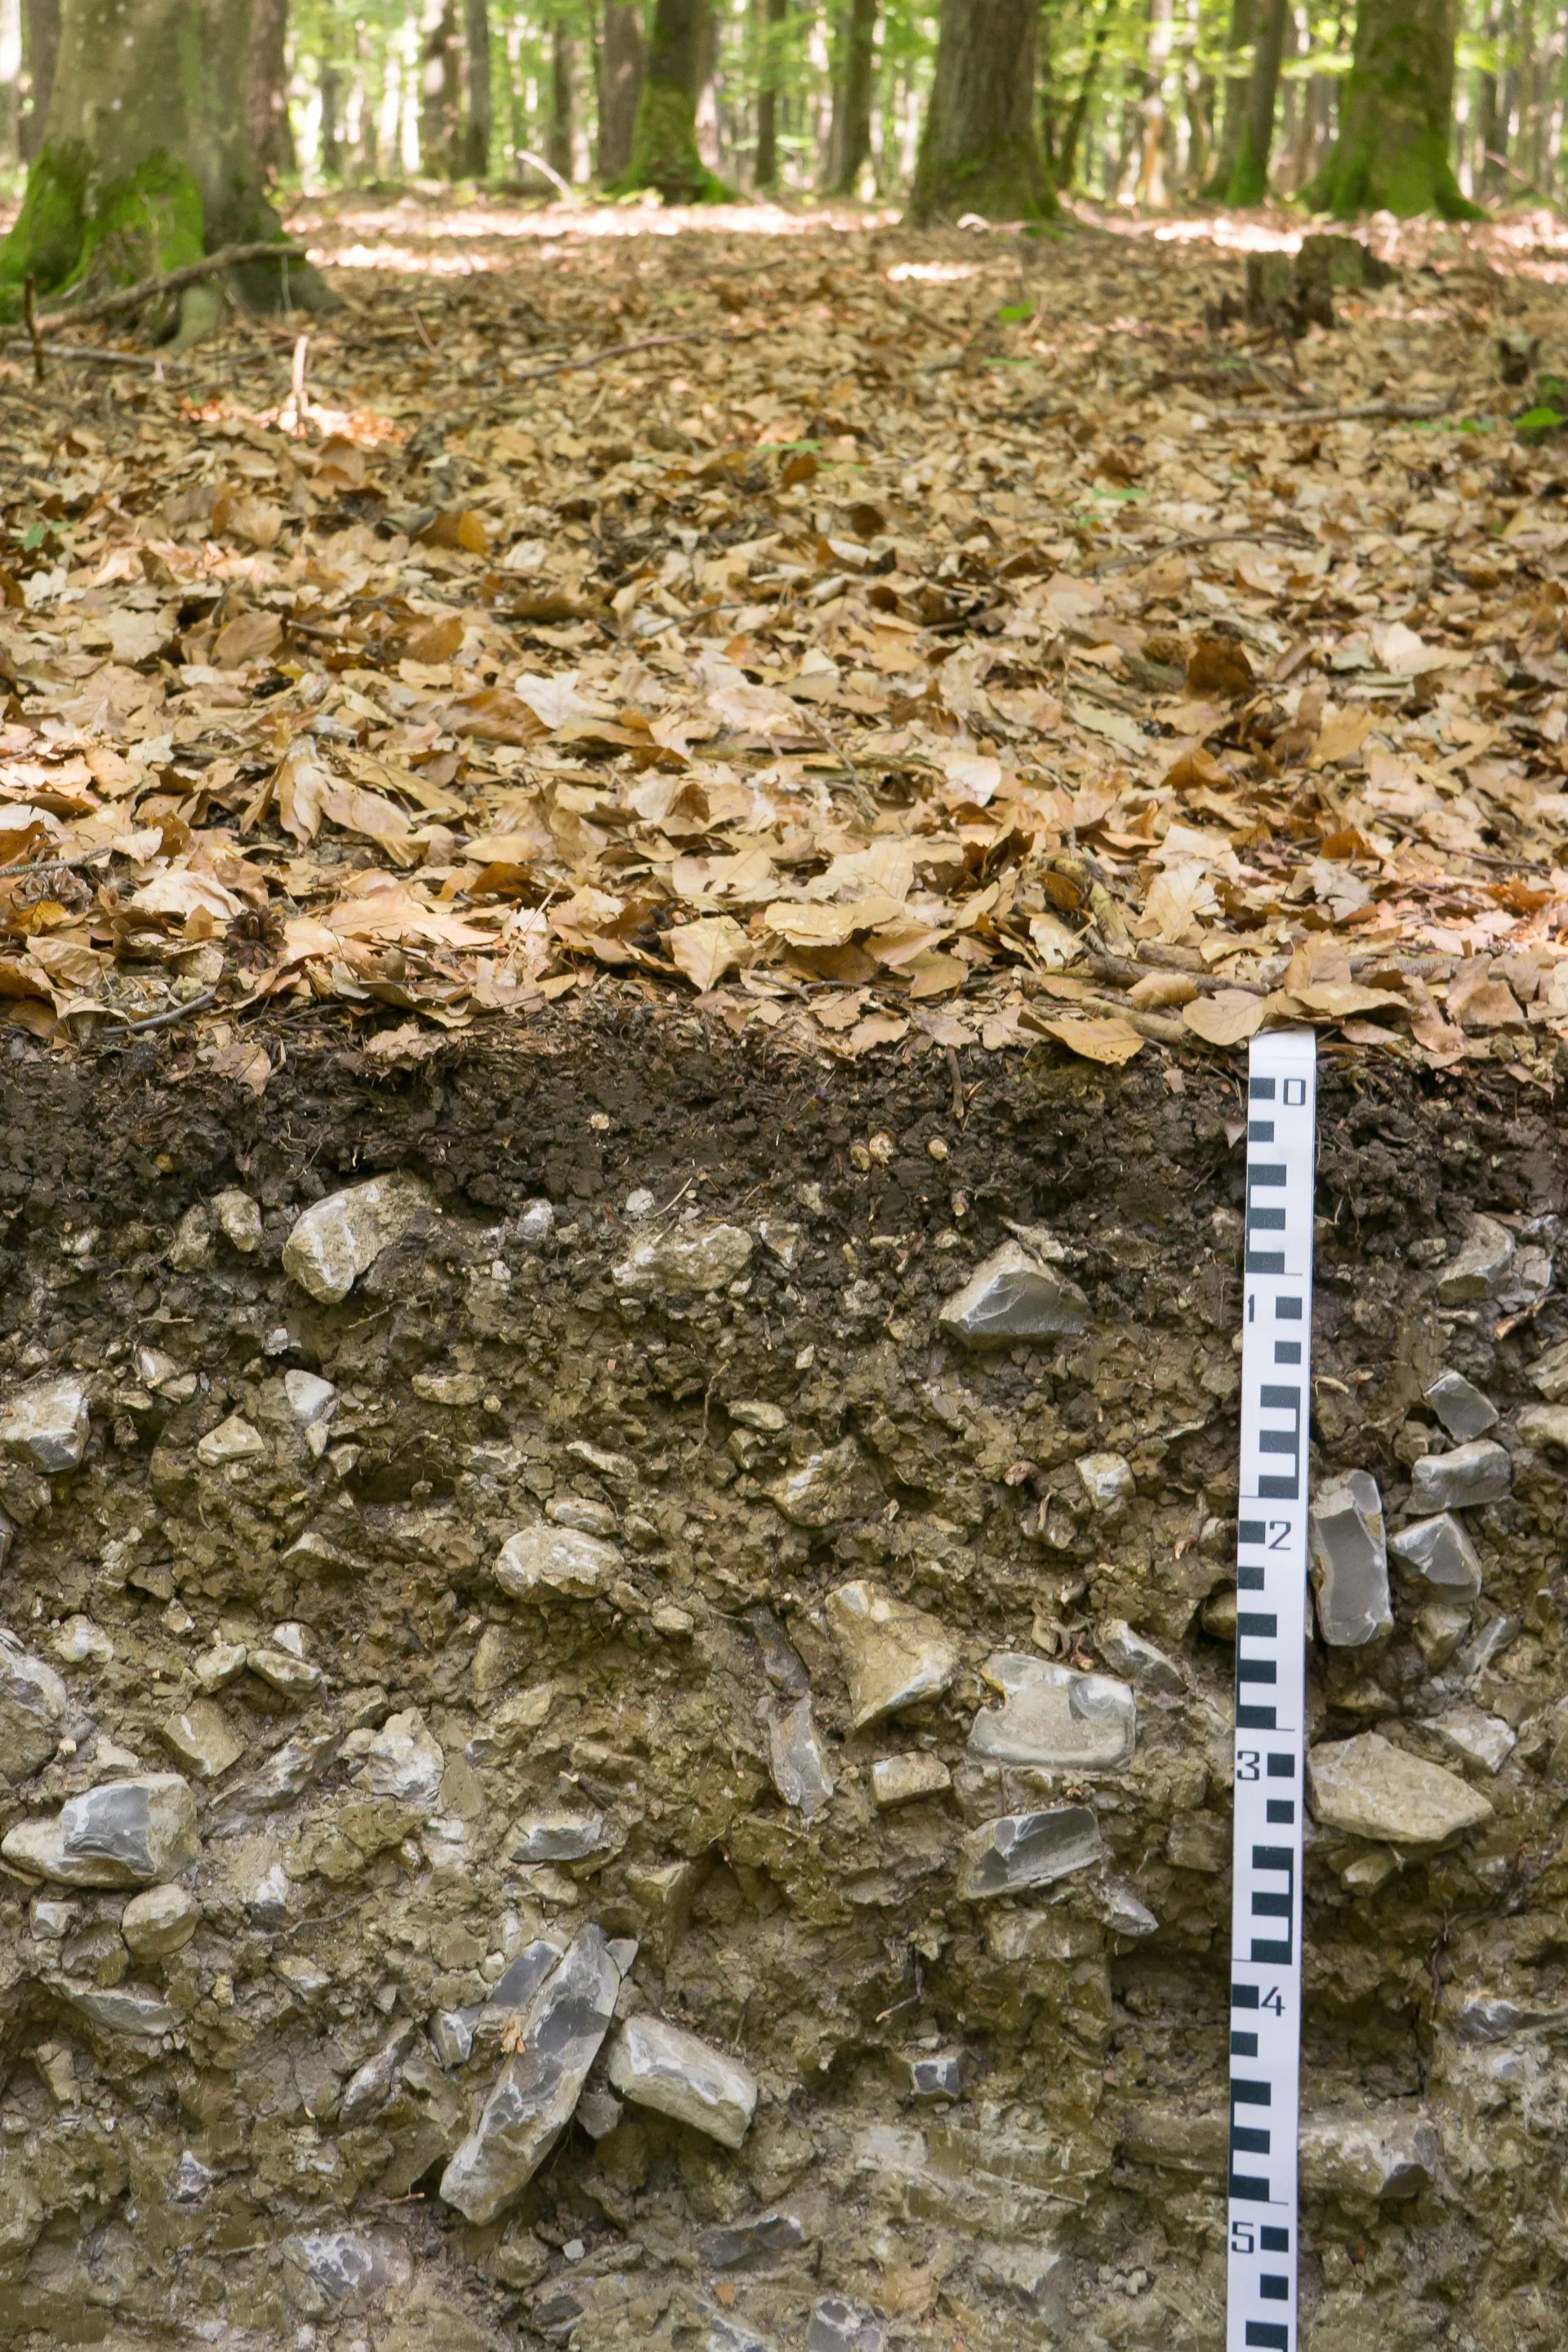 Bodenprofil mit schwarzweißem Maßband. Der ganze Boden enthält sehr viele helle Steine, die von graugelbem Feinboden umgeben sind. In der oberen Bildhälfte sieht man den laubbedeckten Waldboden und hinten viele Baumstämme.